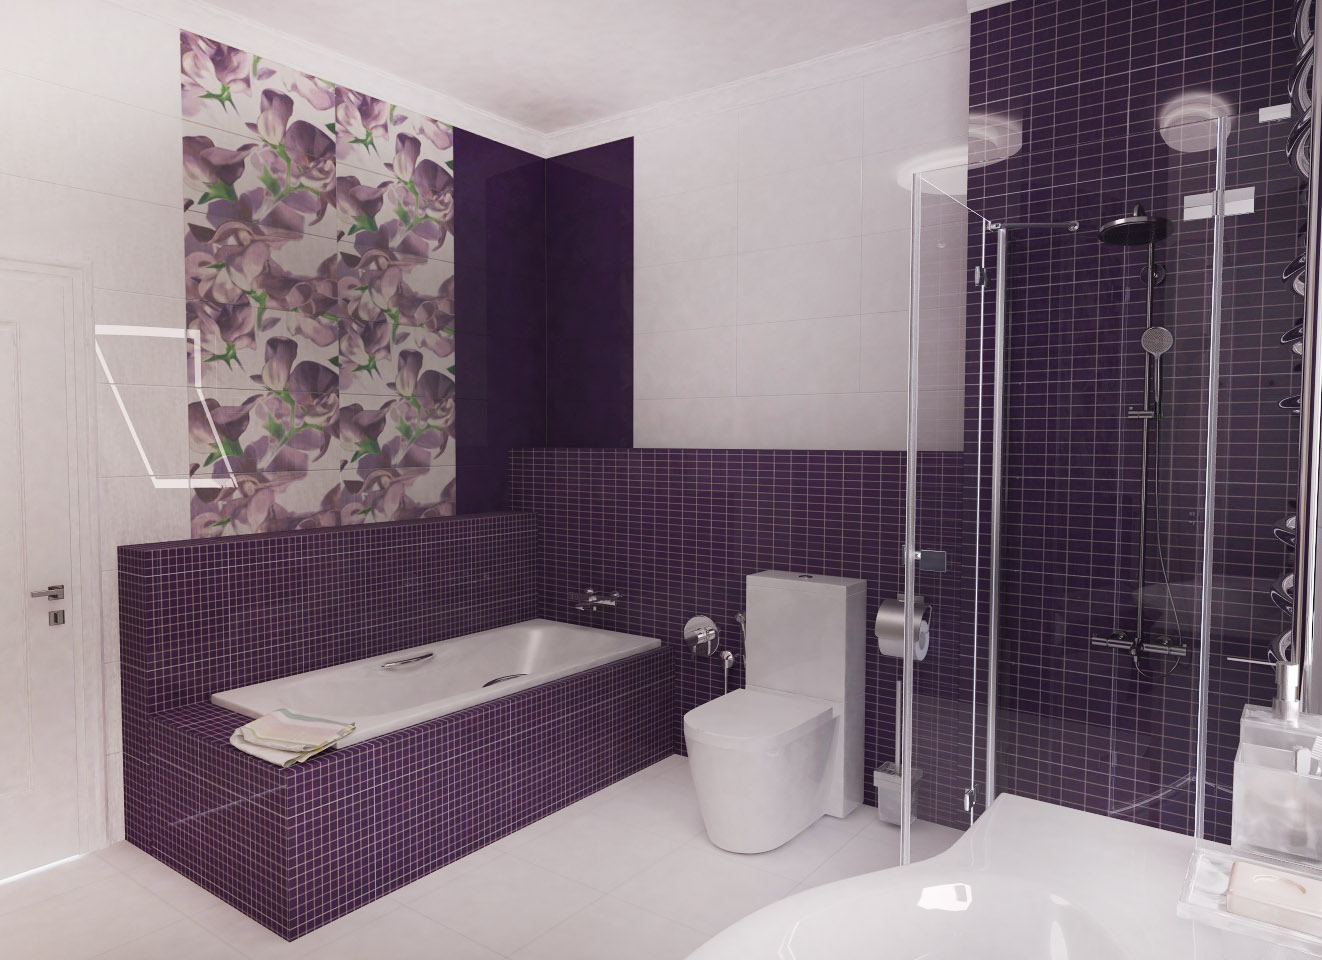 Фиолетовая Ванная, дизайн-проект ванной под ключ, портфолио, дизайн ванной комнаты, интерьер ванной